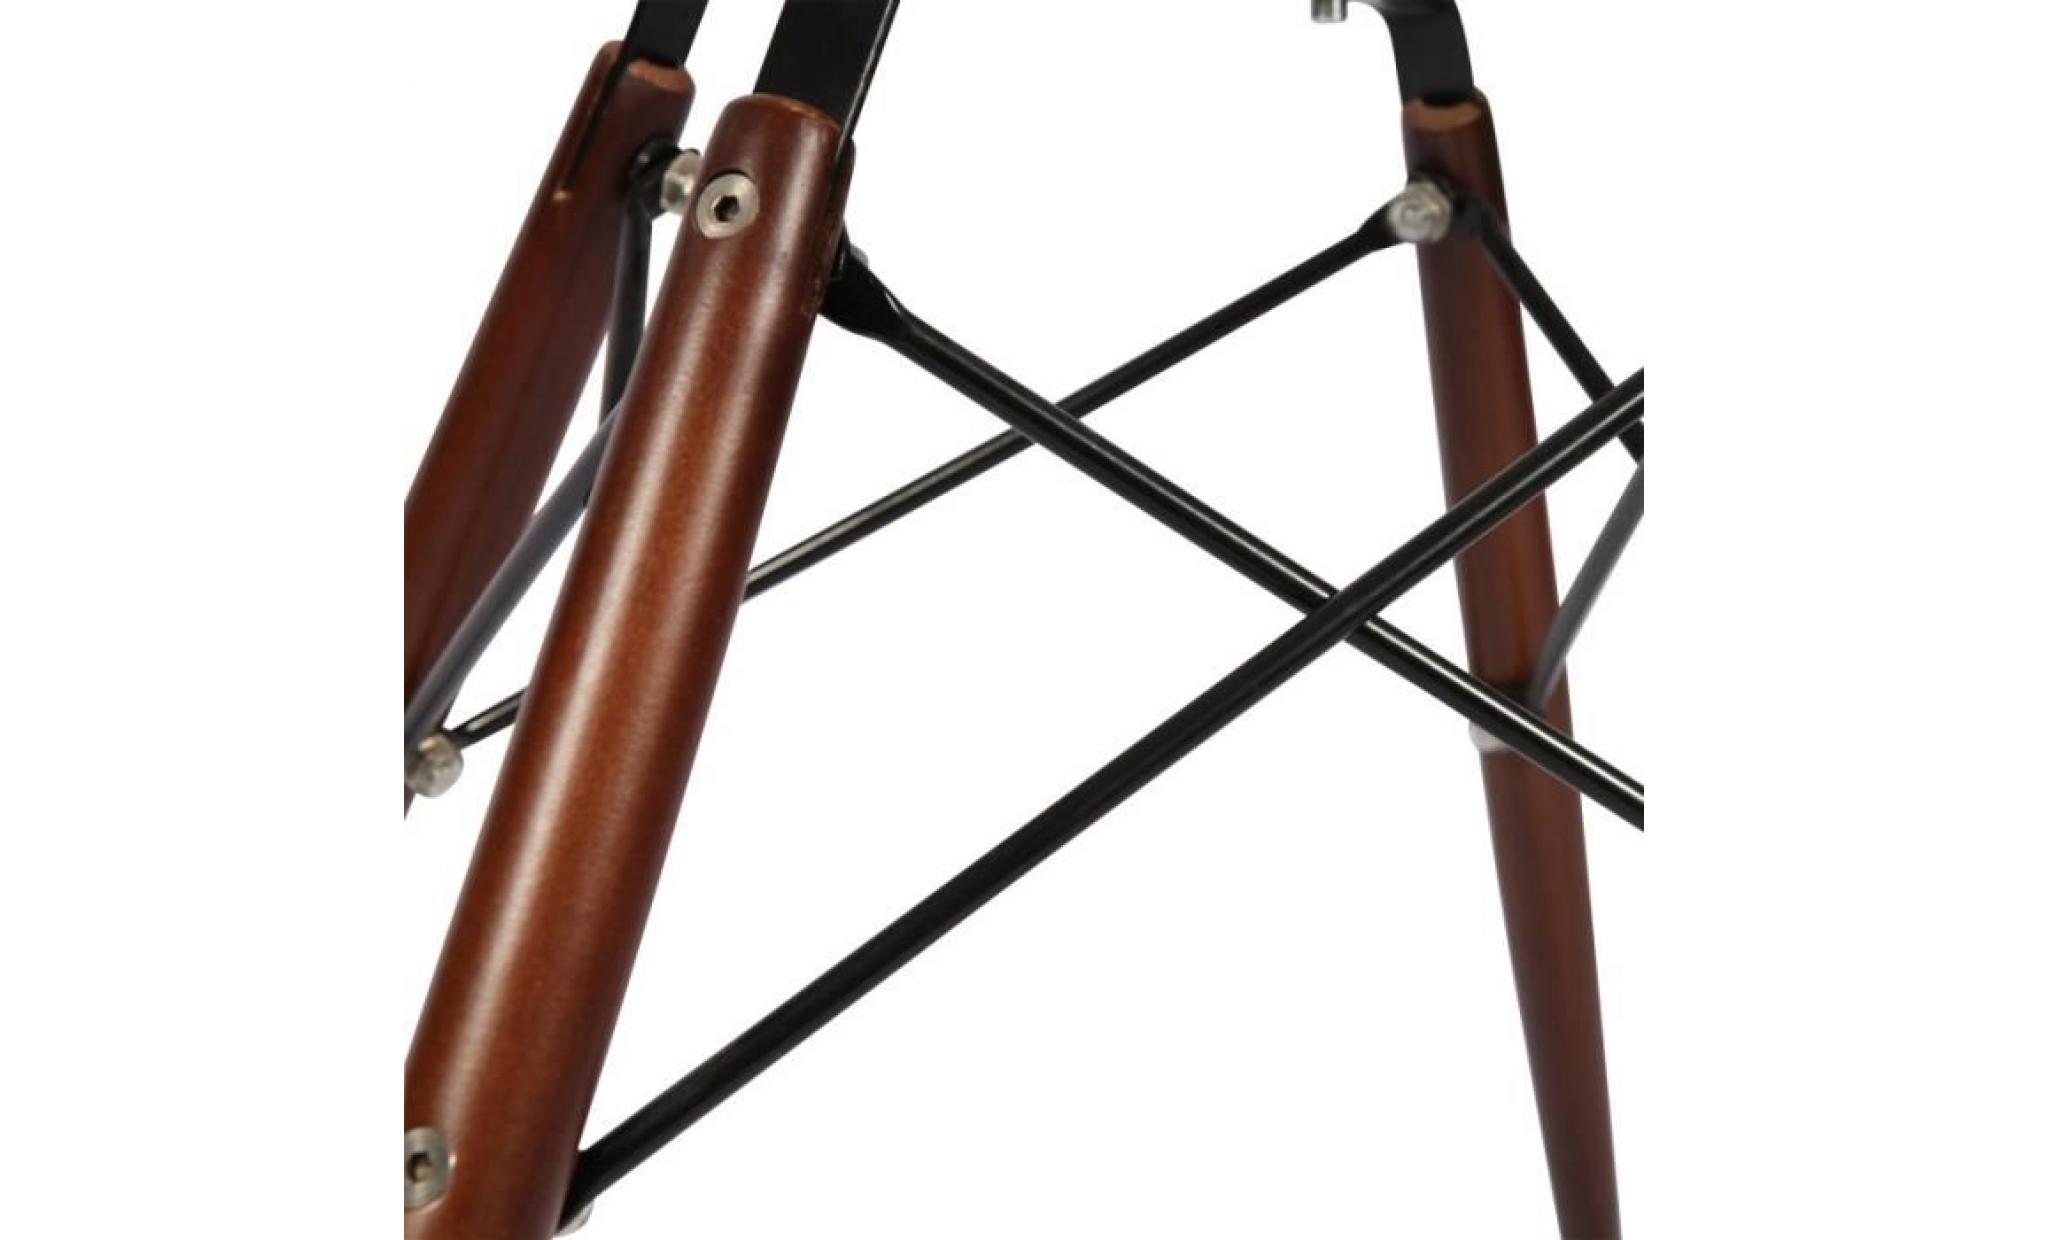 1 x fauteuil design retro style eames daw hauteur 48cm pieds en bois vernis noyer assise orange mobistyl® pas cher